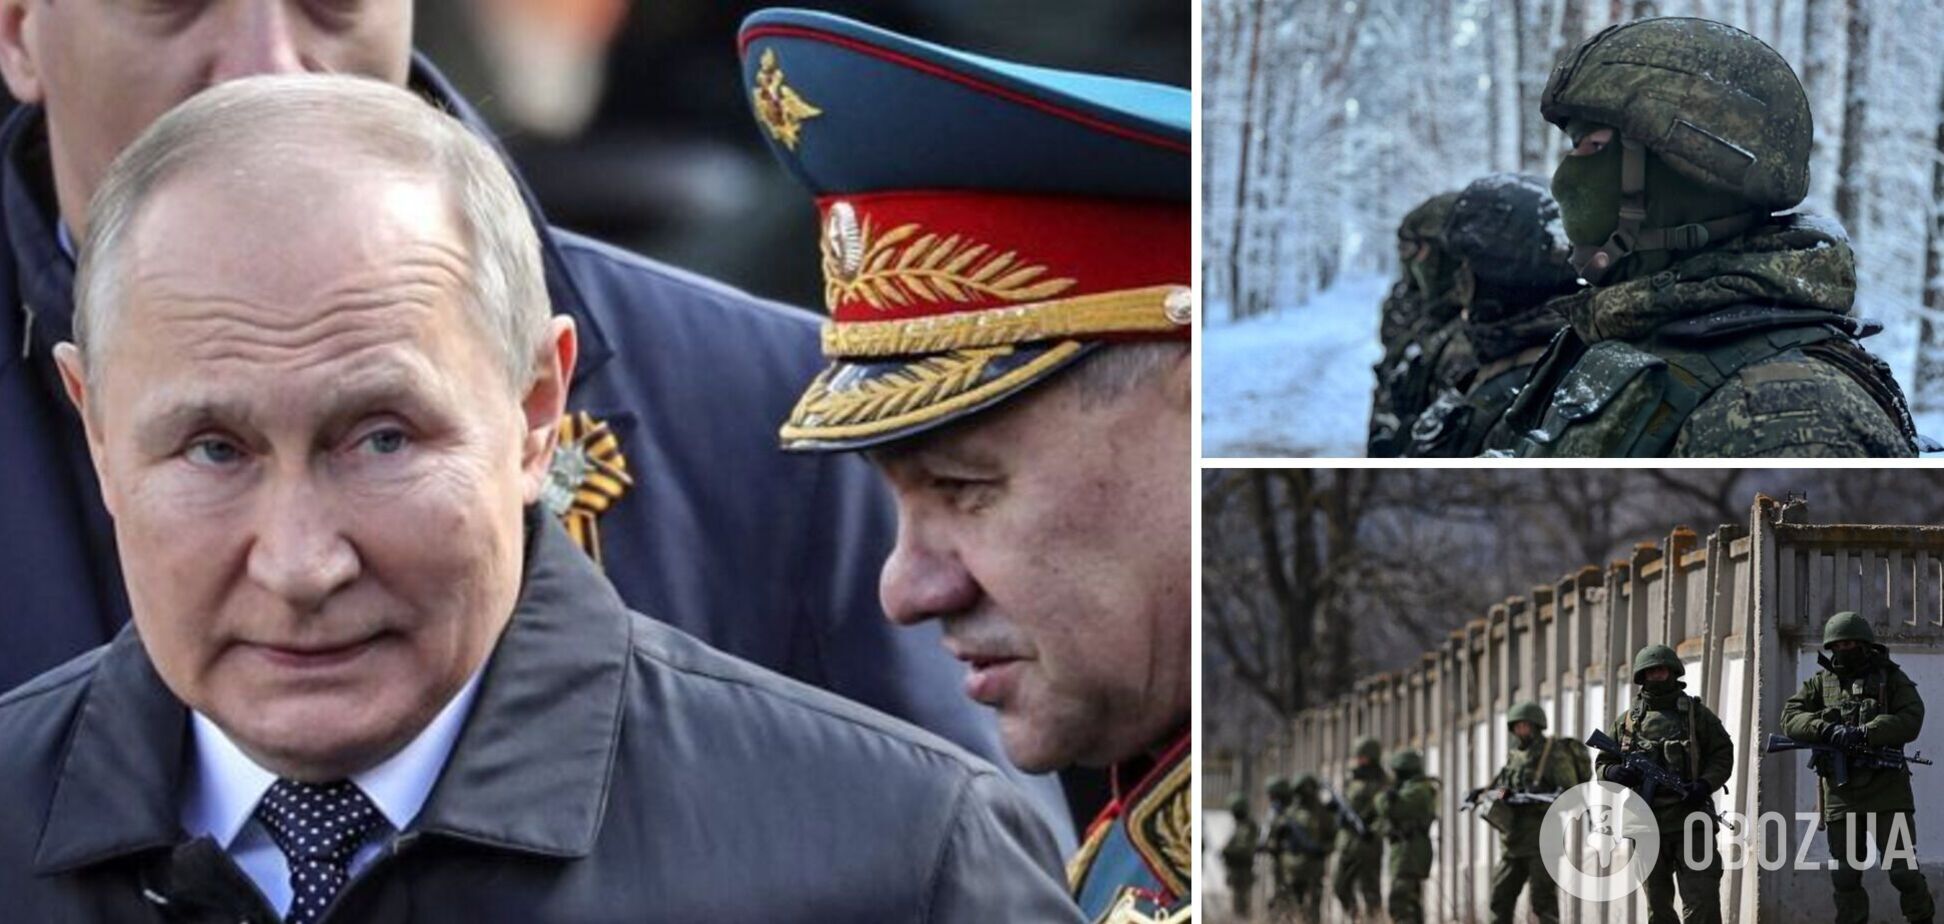 Путин обречён продолжать войну против Украины, так просто отказаться от агрессии он уже не может: интервью с Огрызко